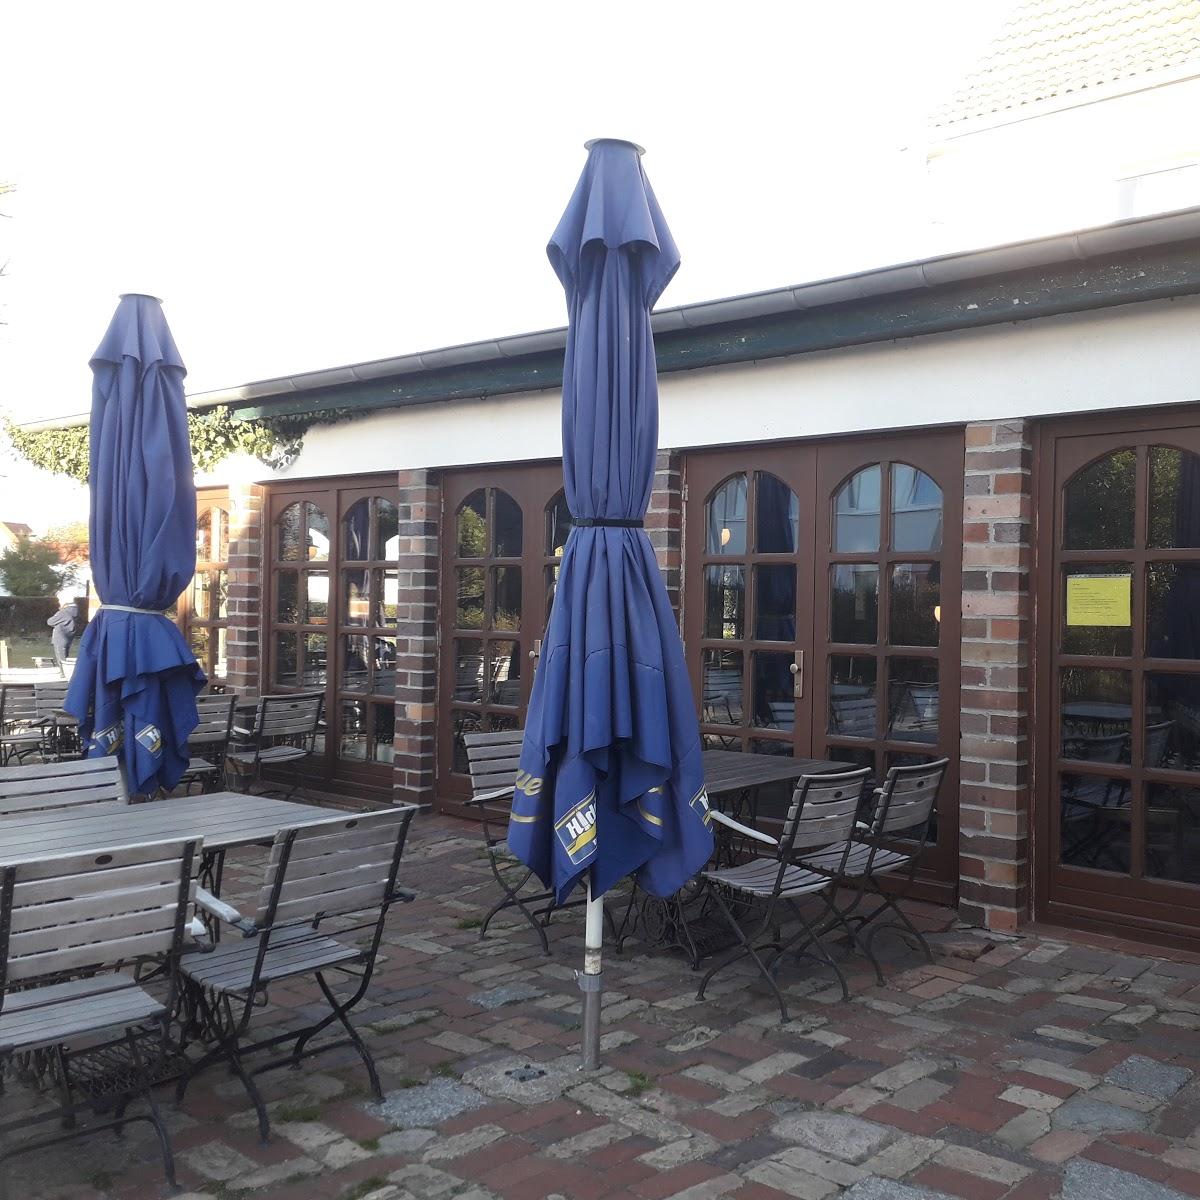 Restaurant "GODEWIND Hotel & Gaststätte" in Insel Hiddensee